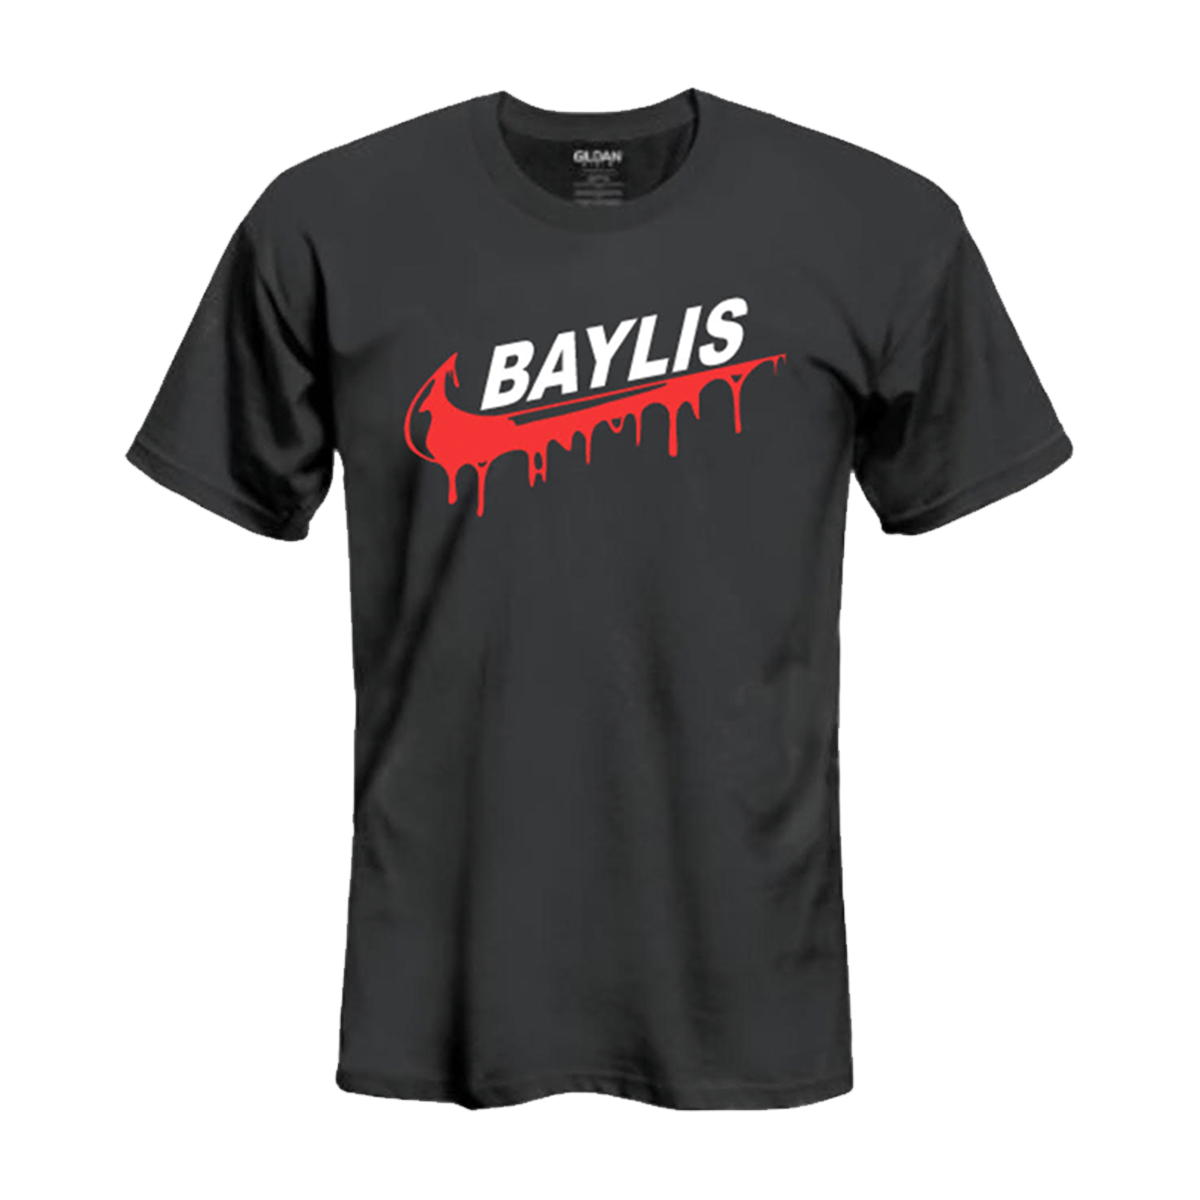 Baylis Swoosh T-Shirt